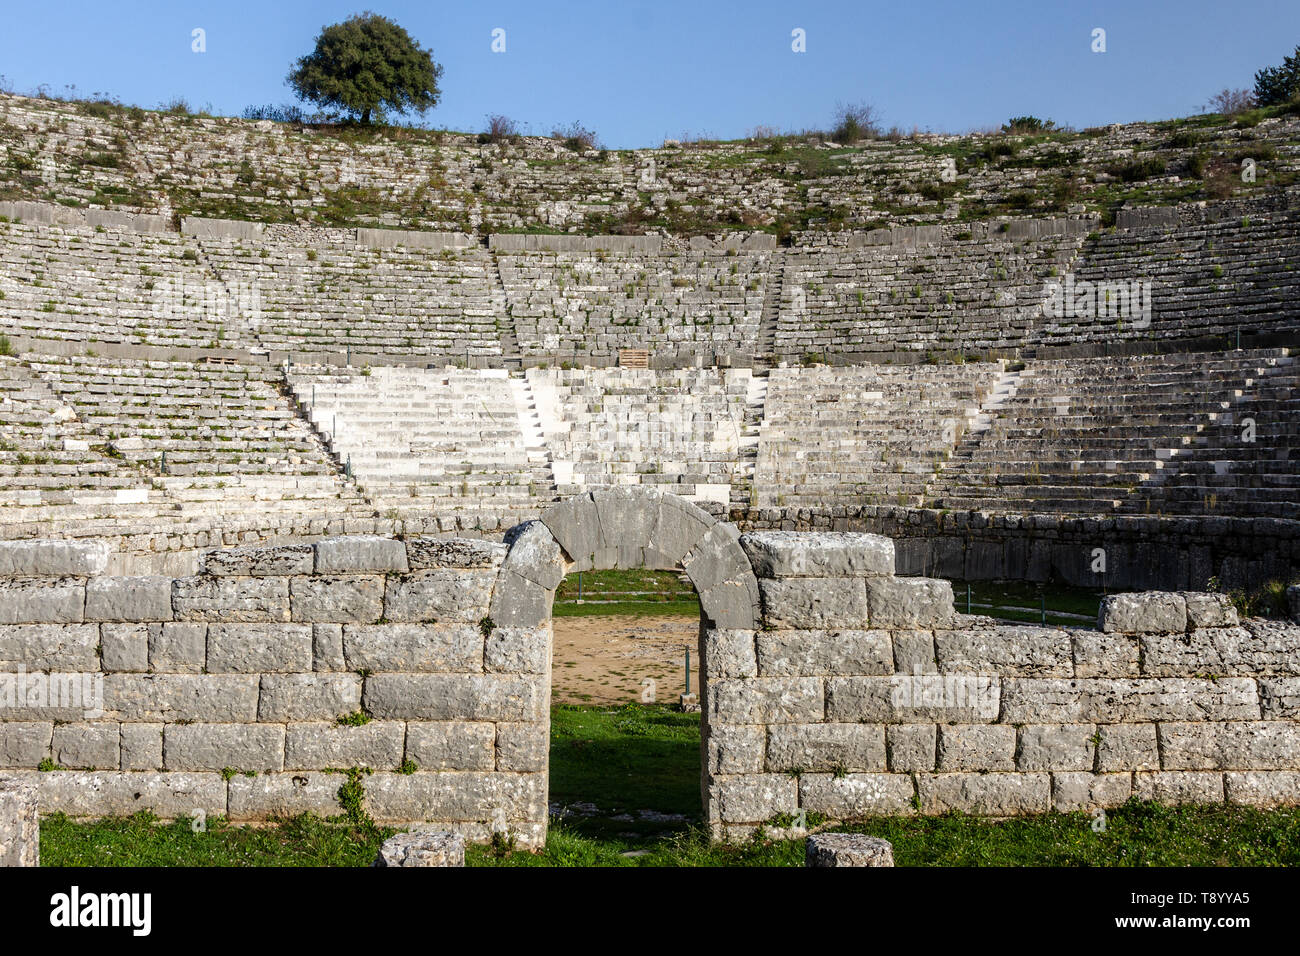 Dodoni teatro antico, uno dei più grandi e meglio conservati antichi teatri greci, situato nella regione Epiro, vicino alla città di Ioannina, Grecia, l'Europa. Foto Stock